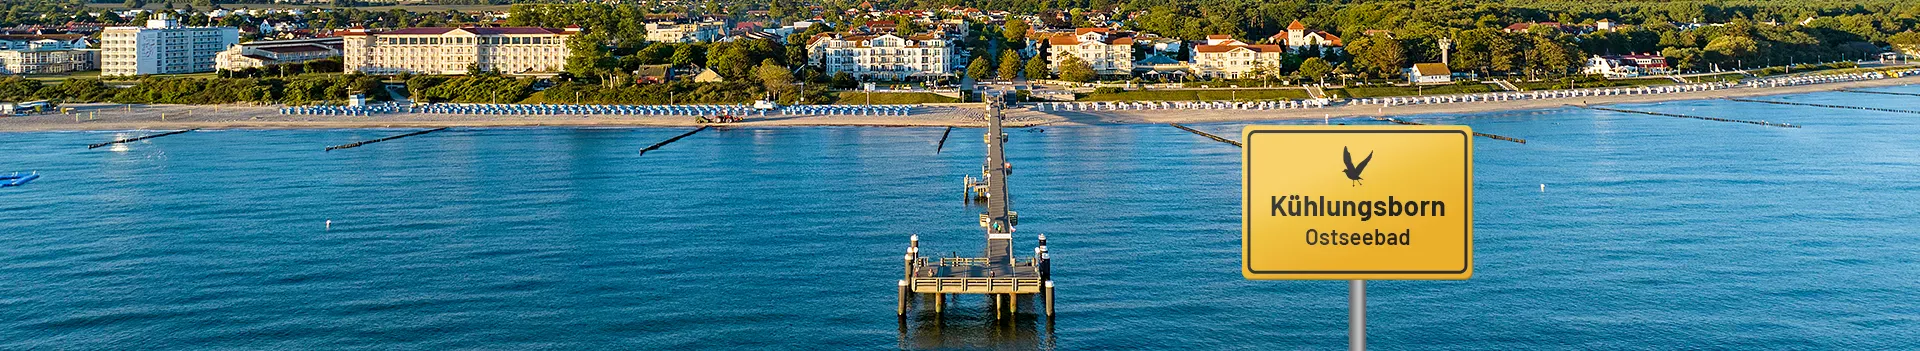 Ostseebad Kühlungsborn – Blick auf die Seebrücke und den Strand